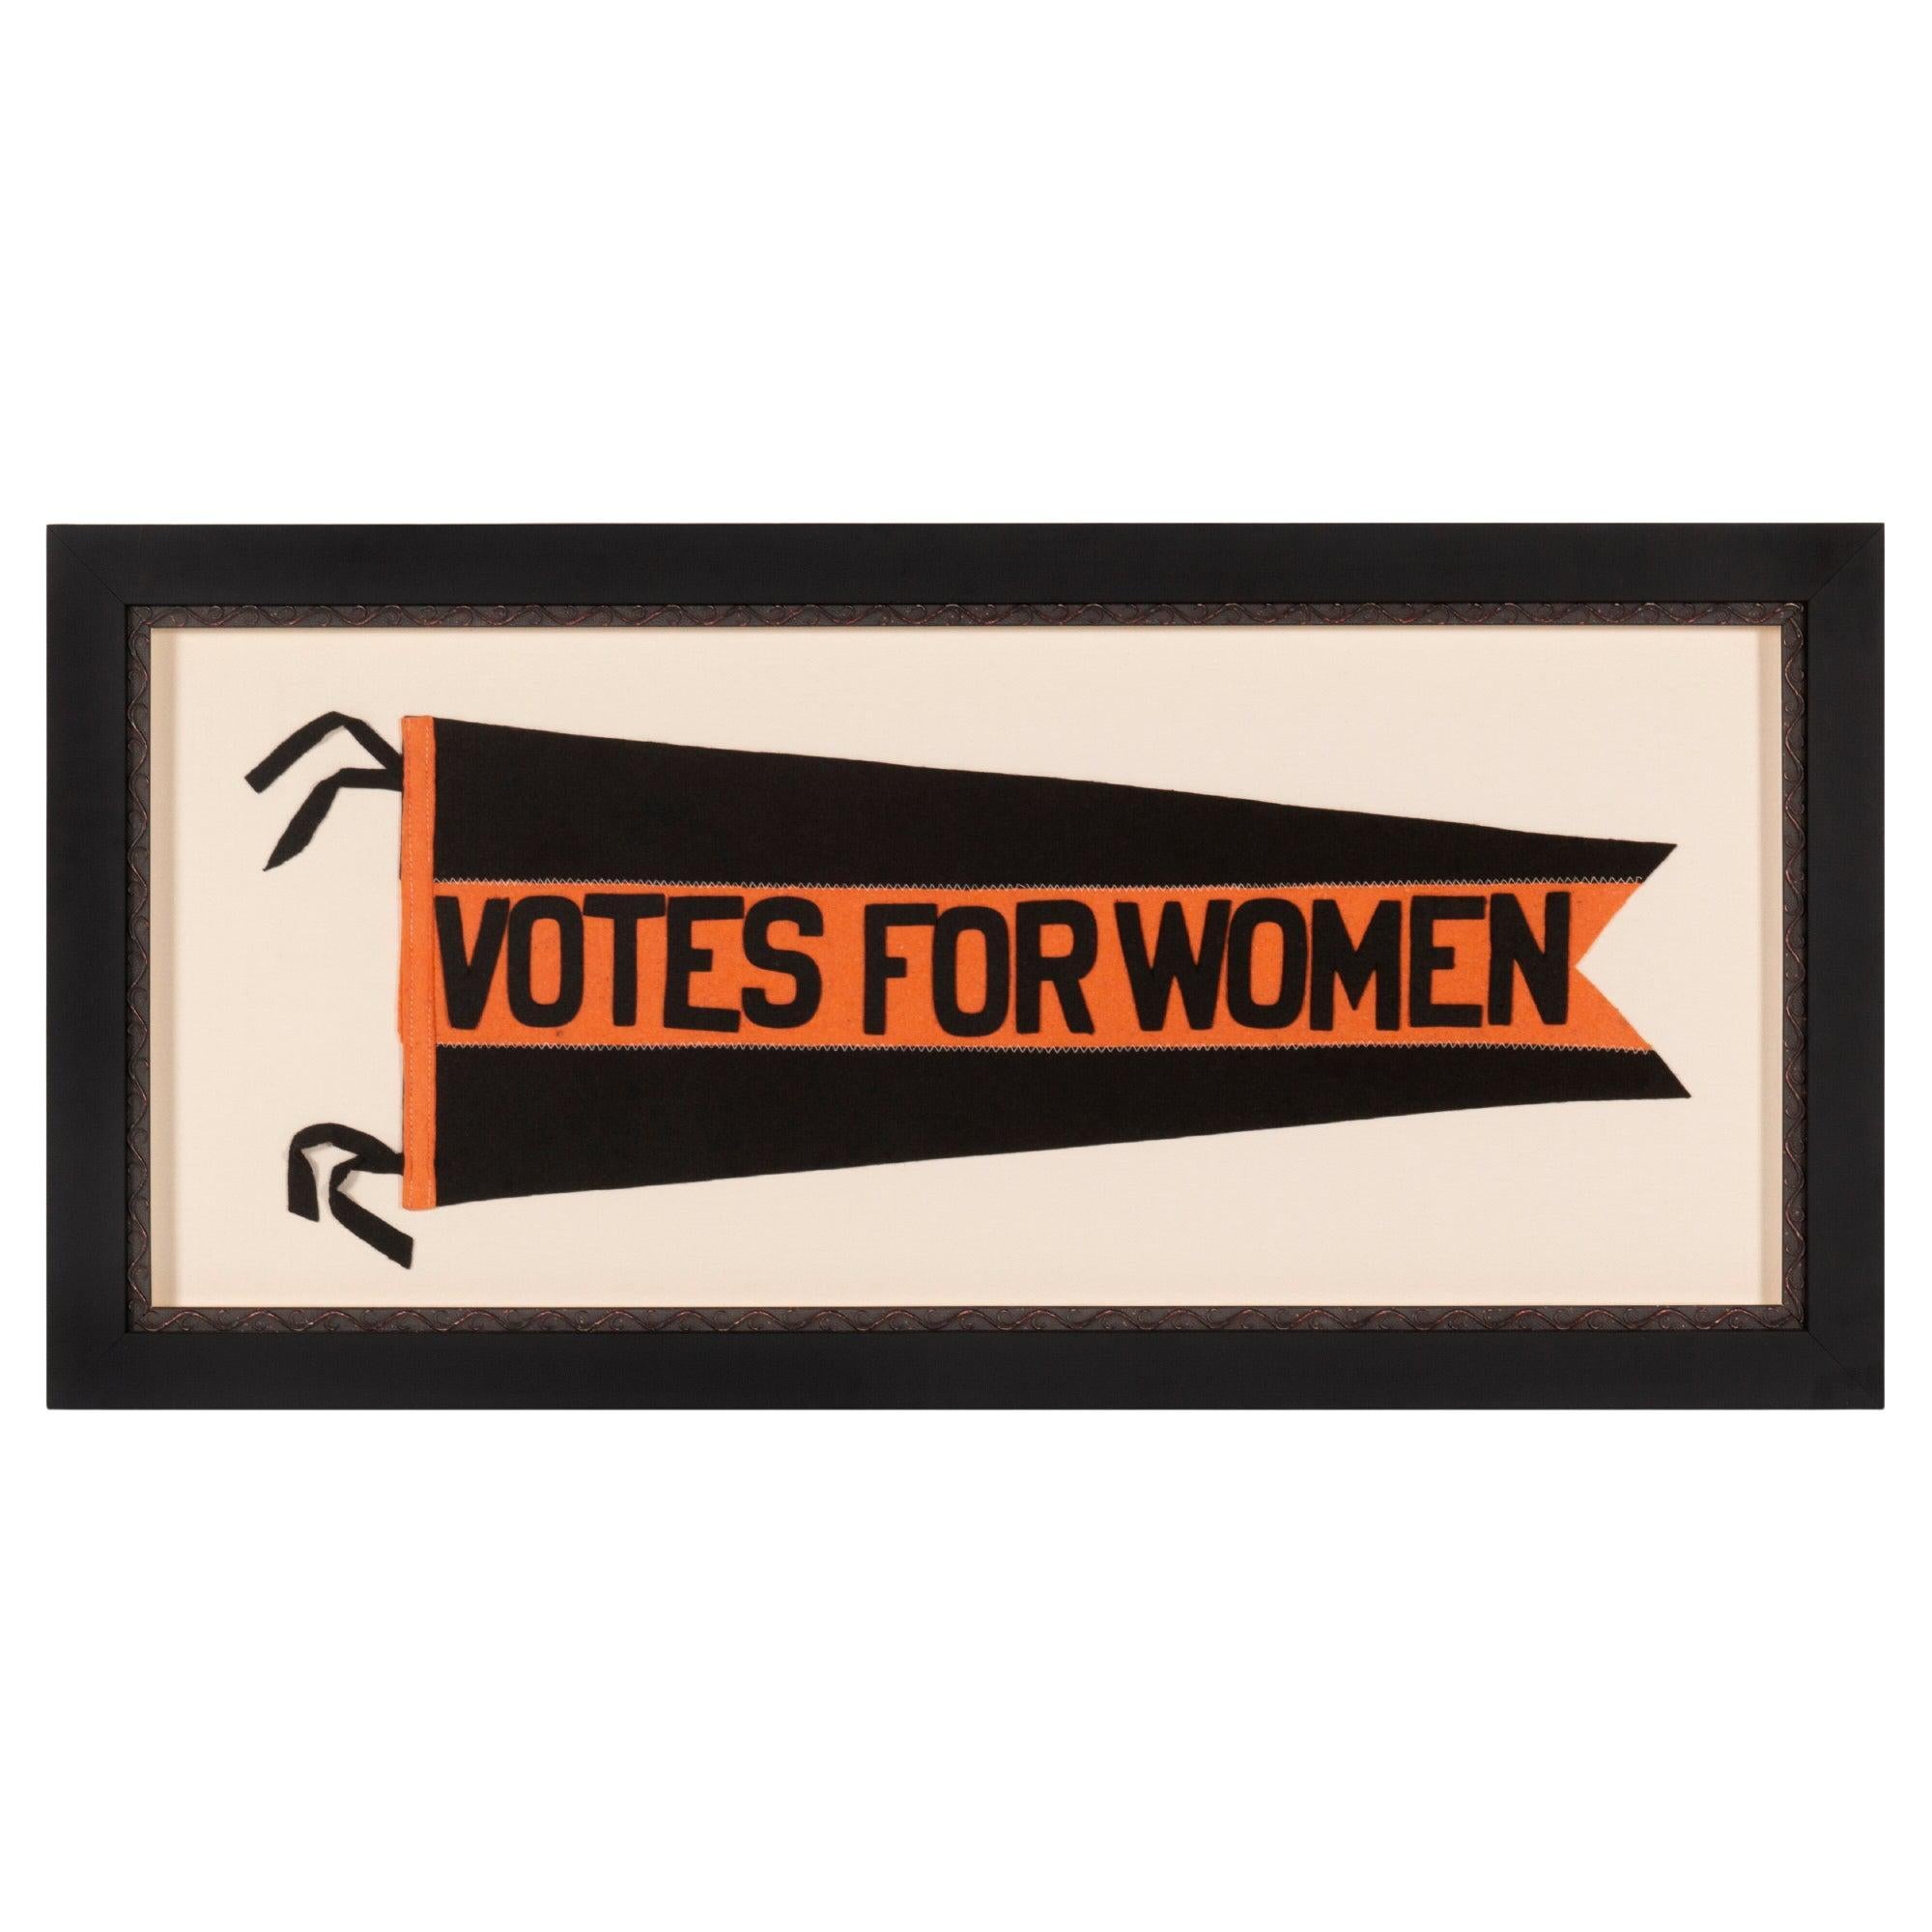 Fanion de Suffragette en noir et orange, enroulé et creux, vers 1912-1920